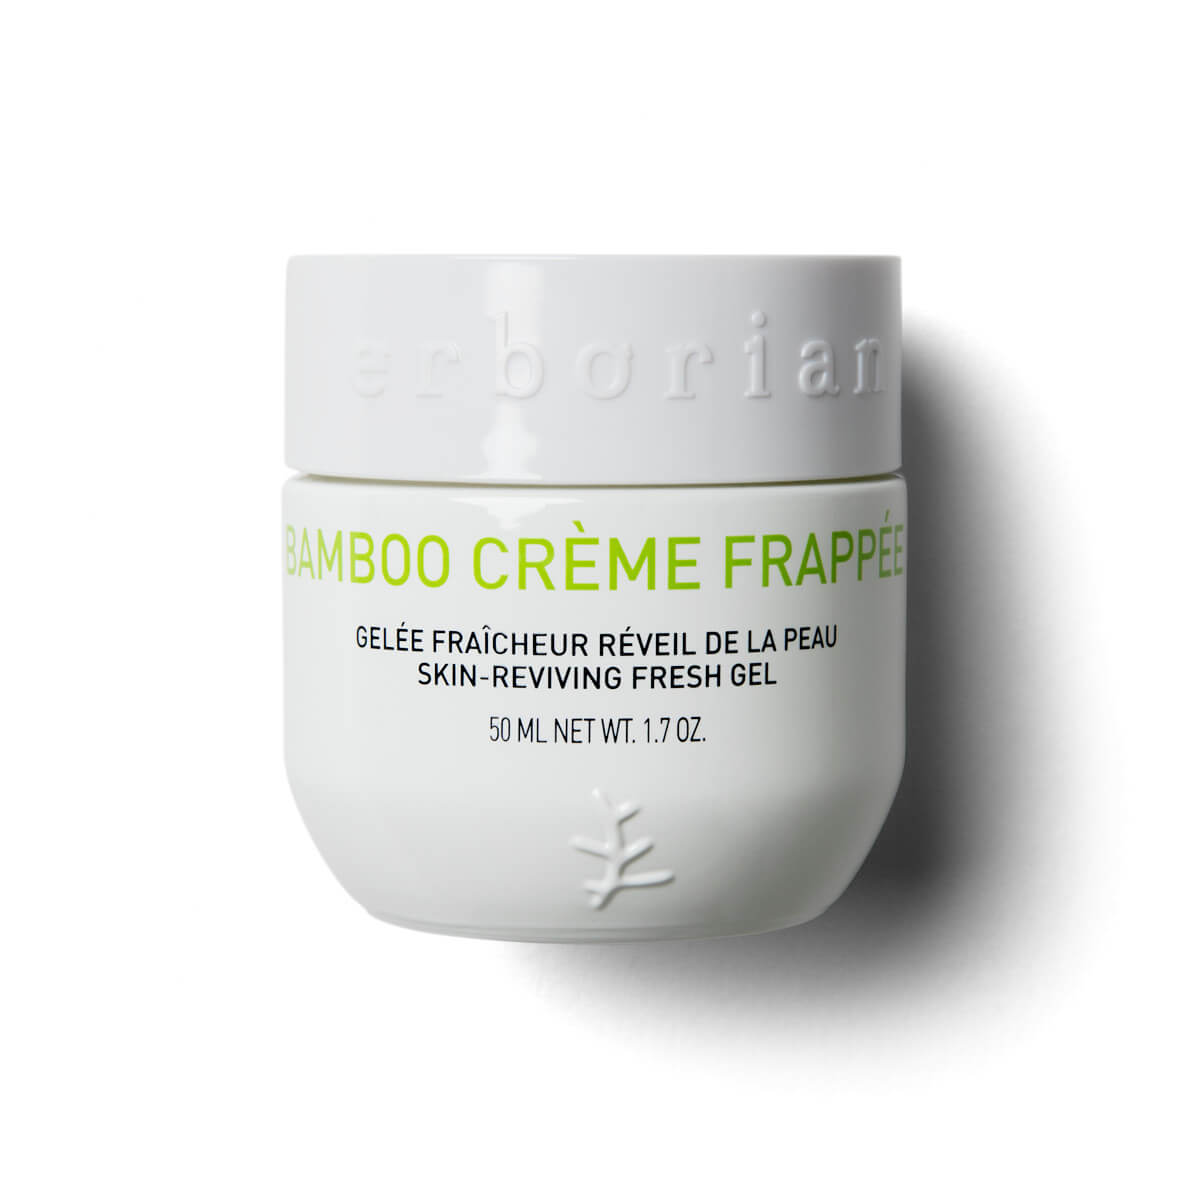 Zobrazit detail výrobku Erborian Osvěžující pleťový gel Bamboo Creme Frappee (Skin-Reviving Fresh Gel) 50 ml